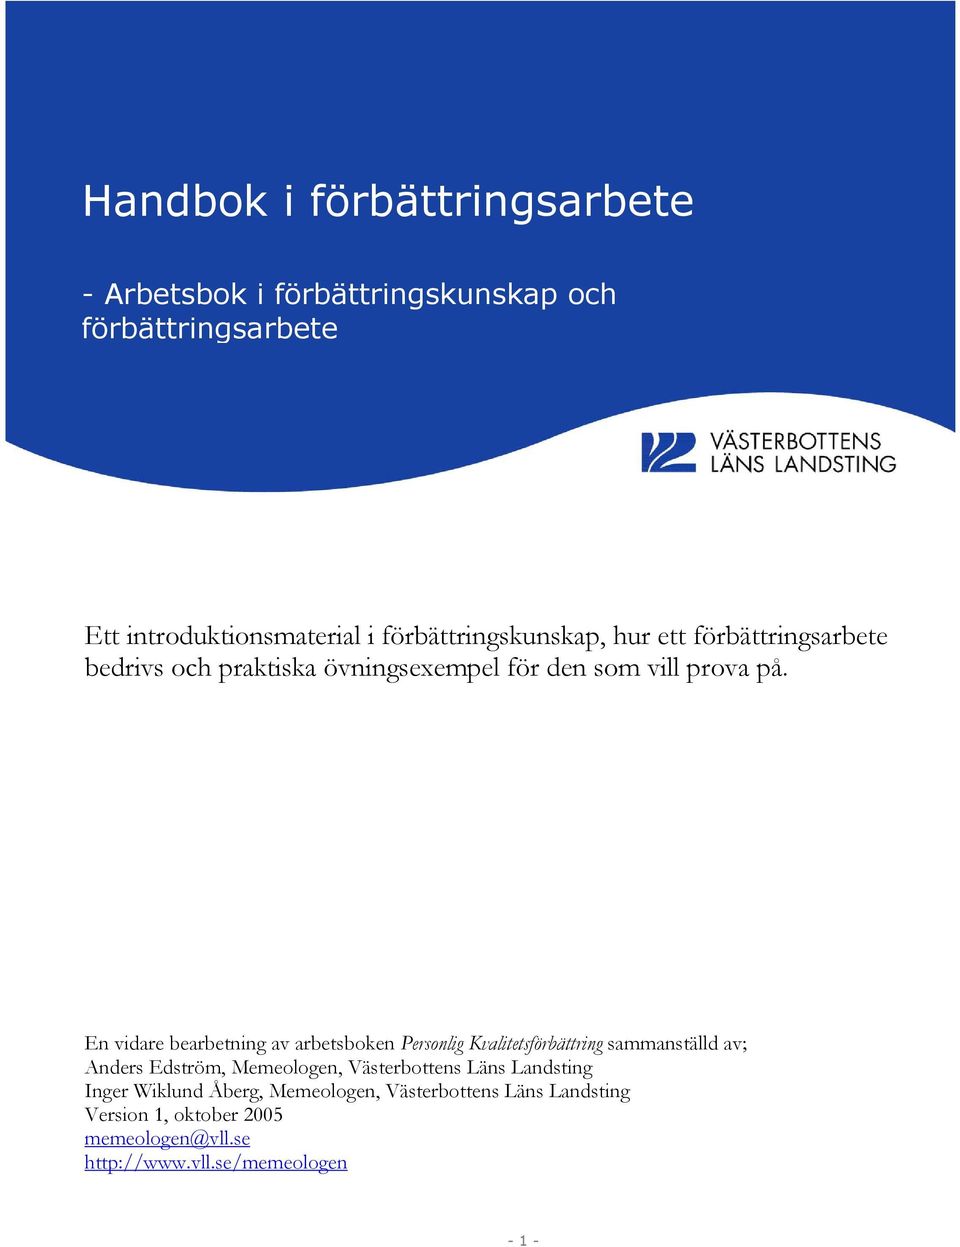 En vidare bearbetning av arbetsboken Personlig Kvalitetsförbättring sammanställd av; Anders Edström, Memeologen, Västerbottens